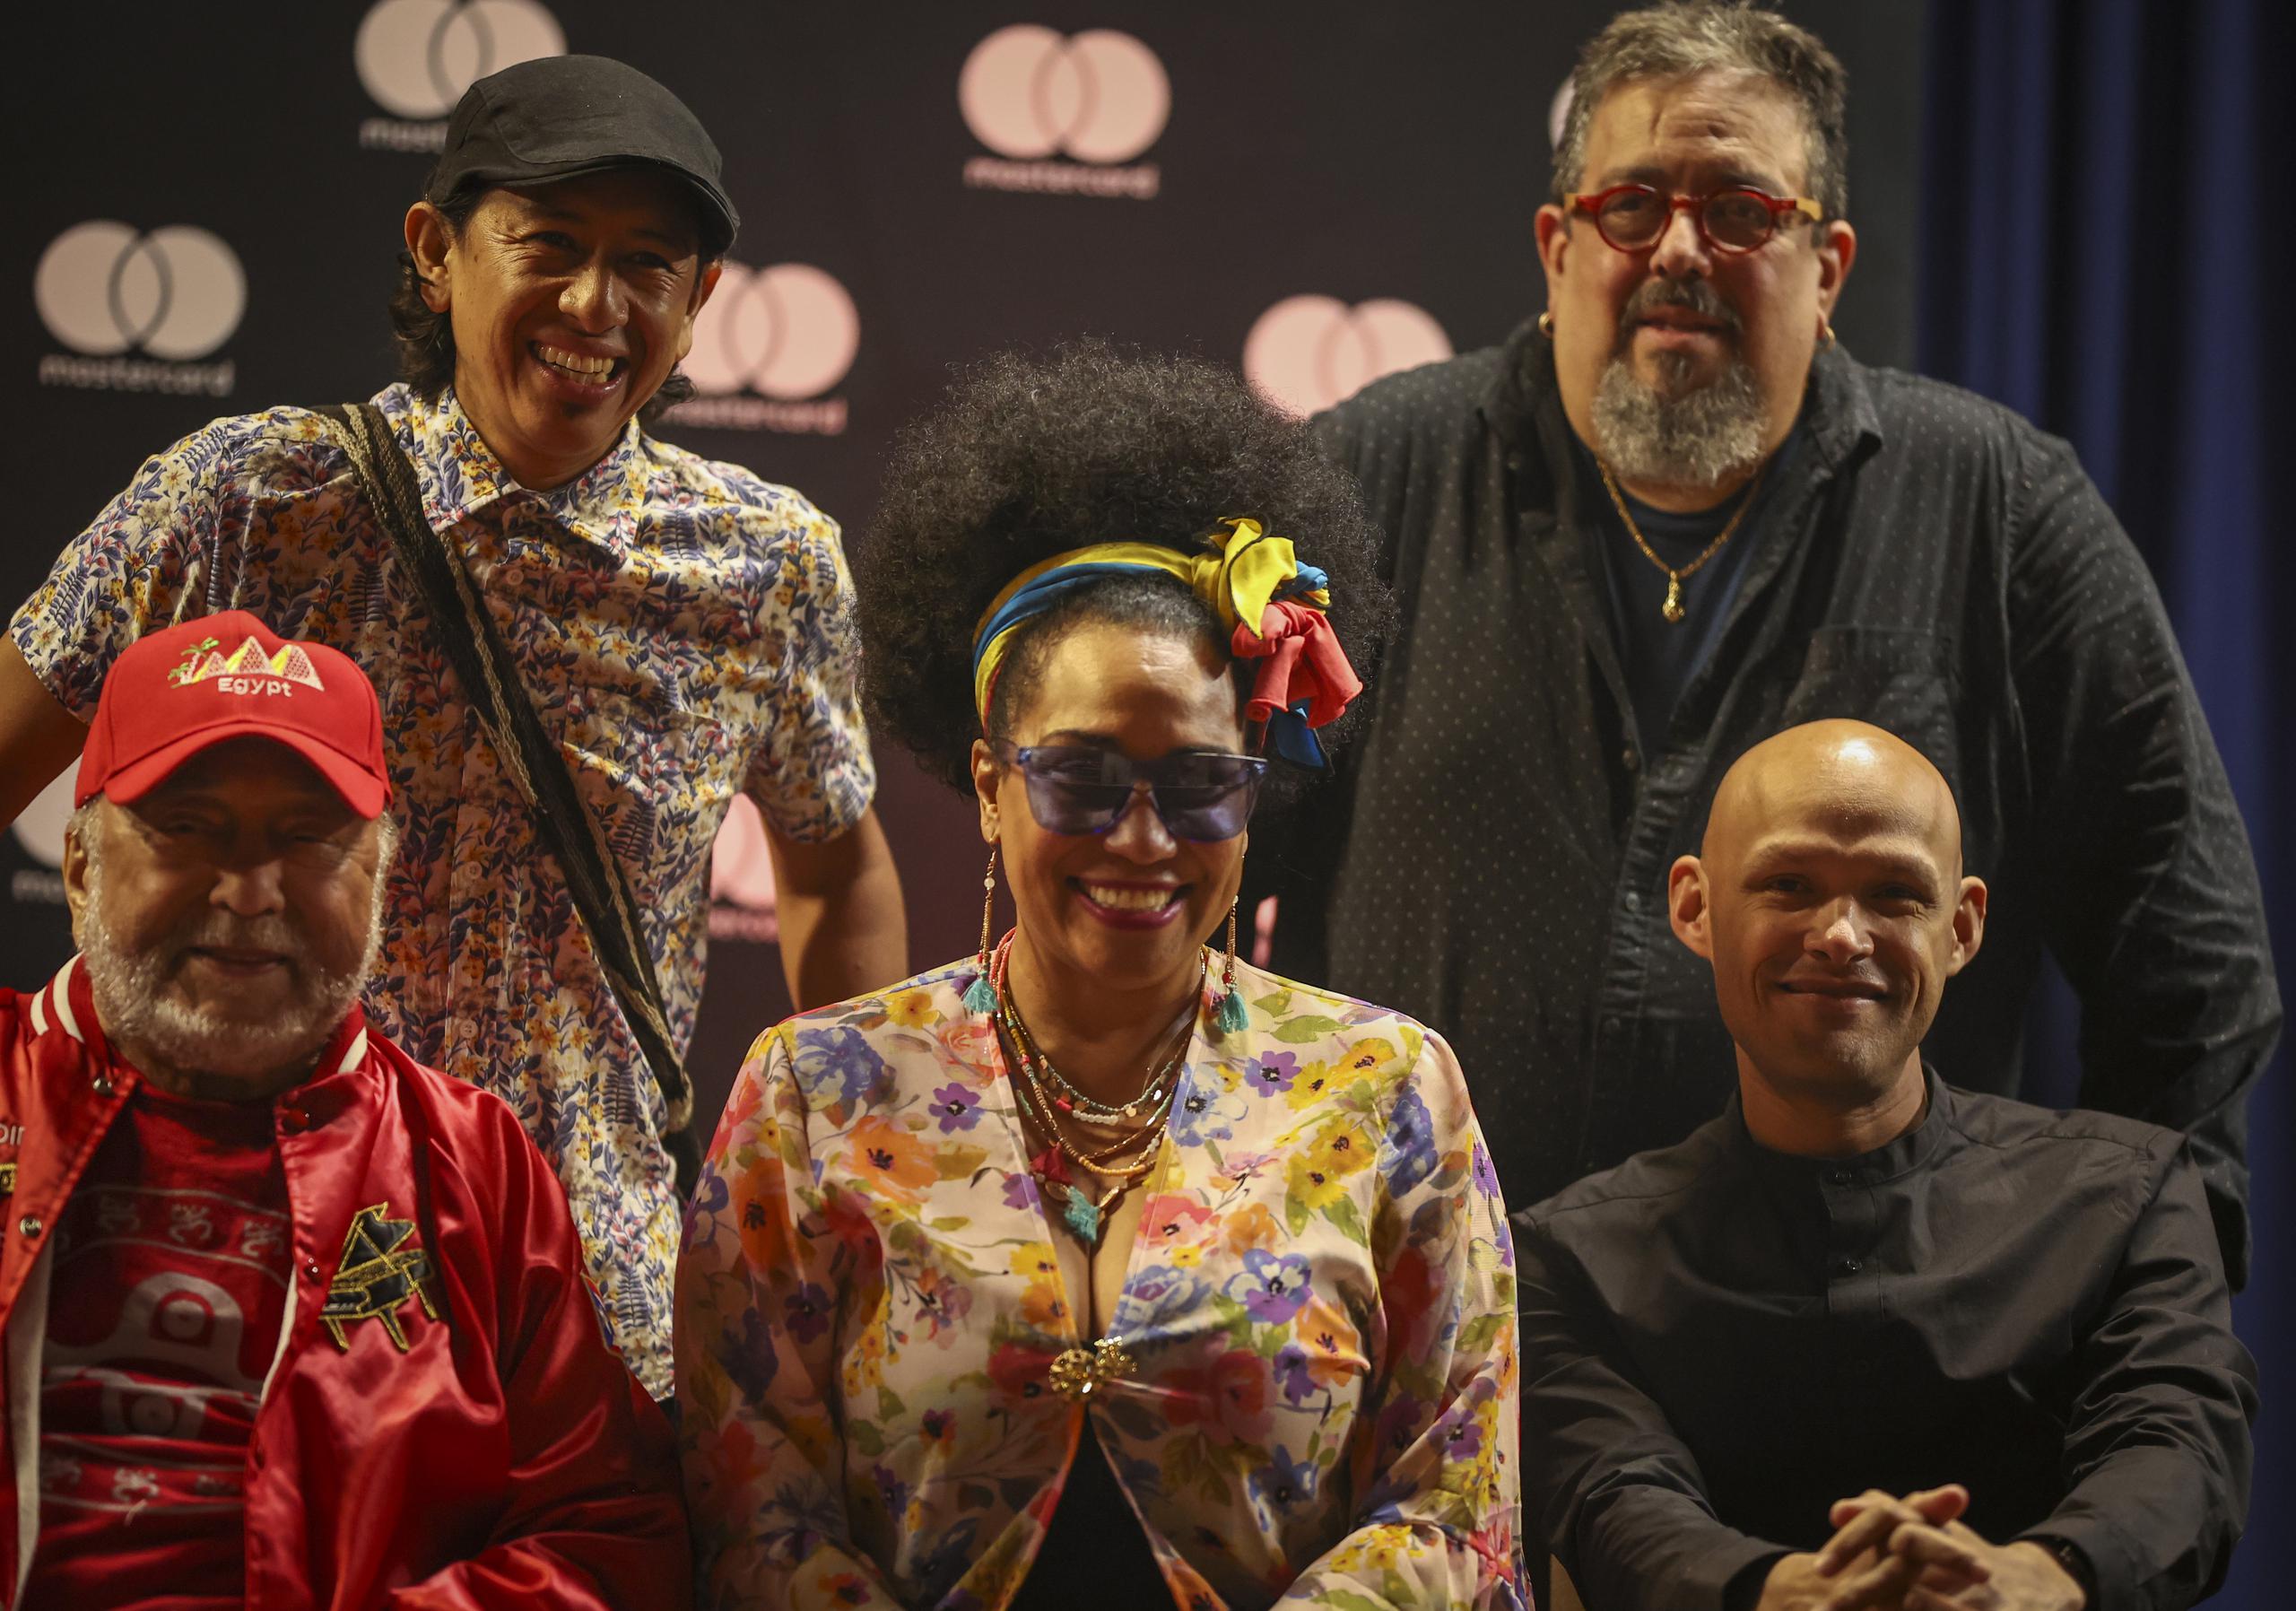 Edmar Castañeda y Egui Castrillo (atrás), y Eddie Palmieri, Aimee Nuviola y Miguel Zenón son parte de los artistas que se presentarán en el Mastercard JazzFest 23.